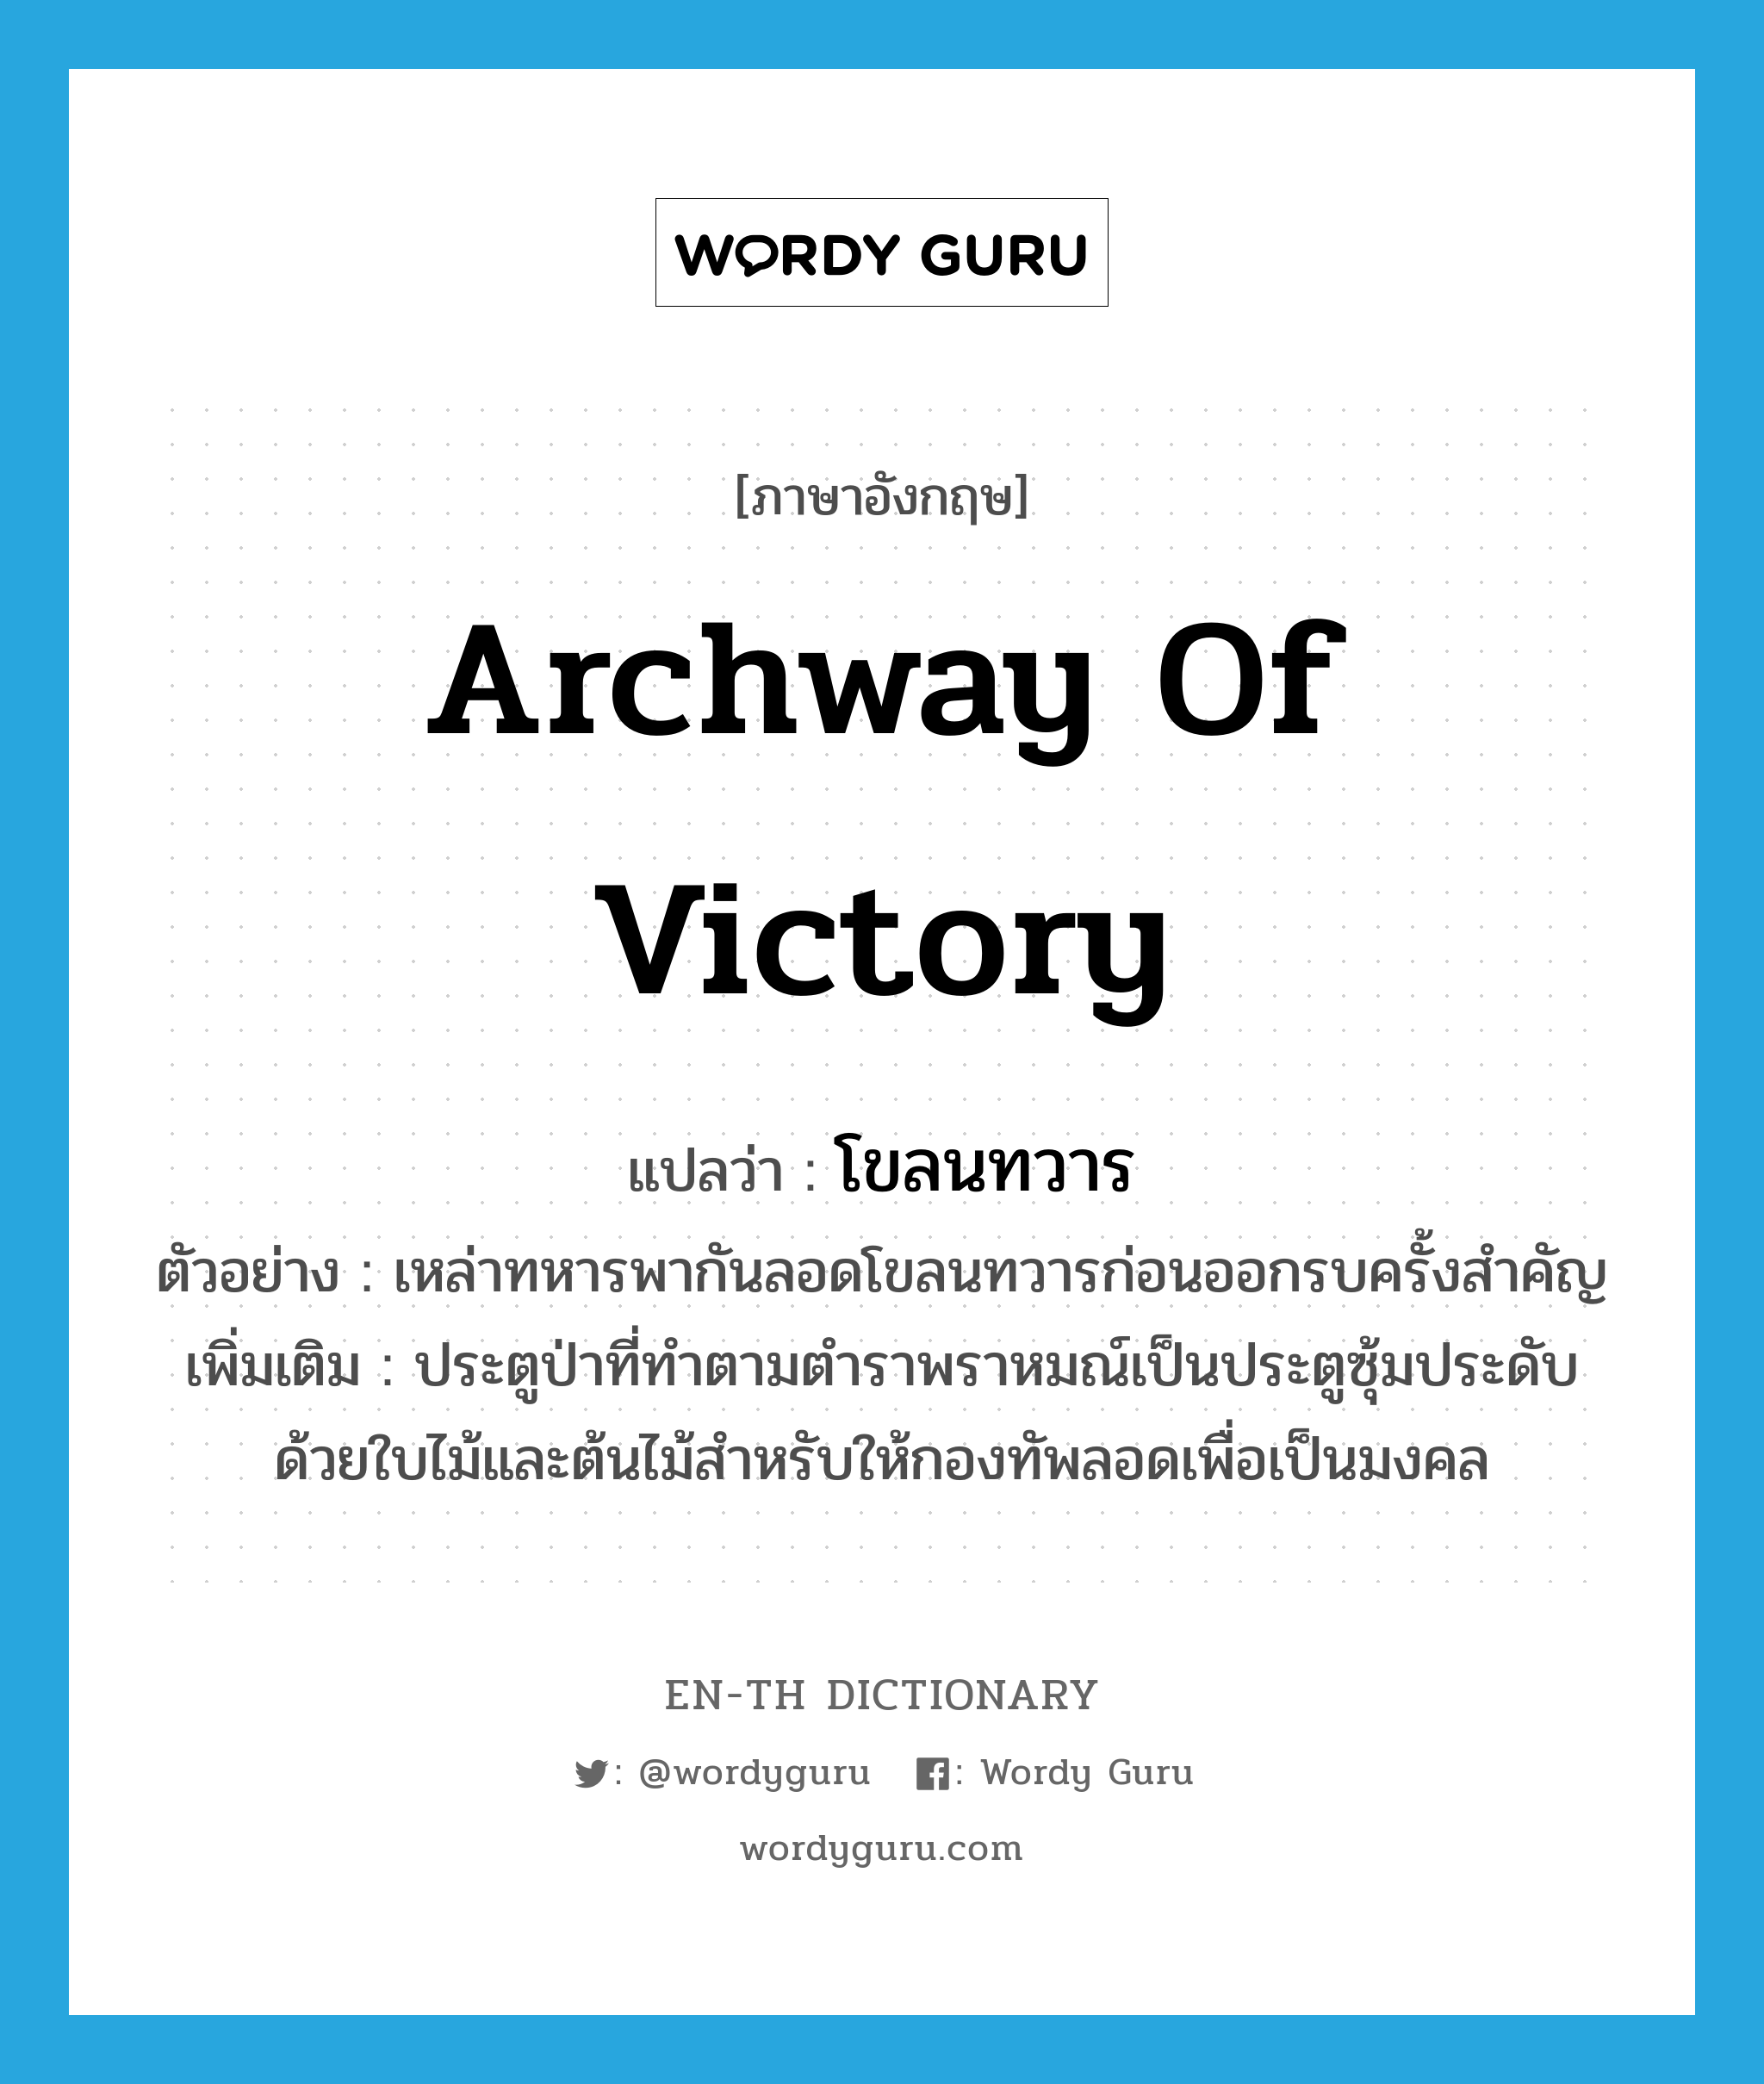 archway of victory แปลว่า?, คำศัพท์ภาษาอังกฤษ archway of victory แปลว่า โขลนทวาร ประเภท N ตัวอย่าง เหล่าทหารพากันลอดโขลนทวารก่อนออกรบครั้งสำคัญ เพิ่มเติม ประตูป่าที่ทำตามตำราพราหมณ์เป็นประตูซุ้มประดับด้วยใบไม้และต้นไม้สำหรับให้กองทัพลอดเพื่อเป็นมงคล หมวด N